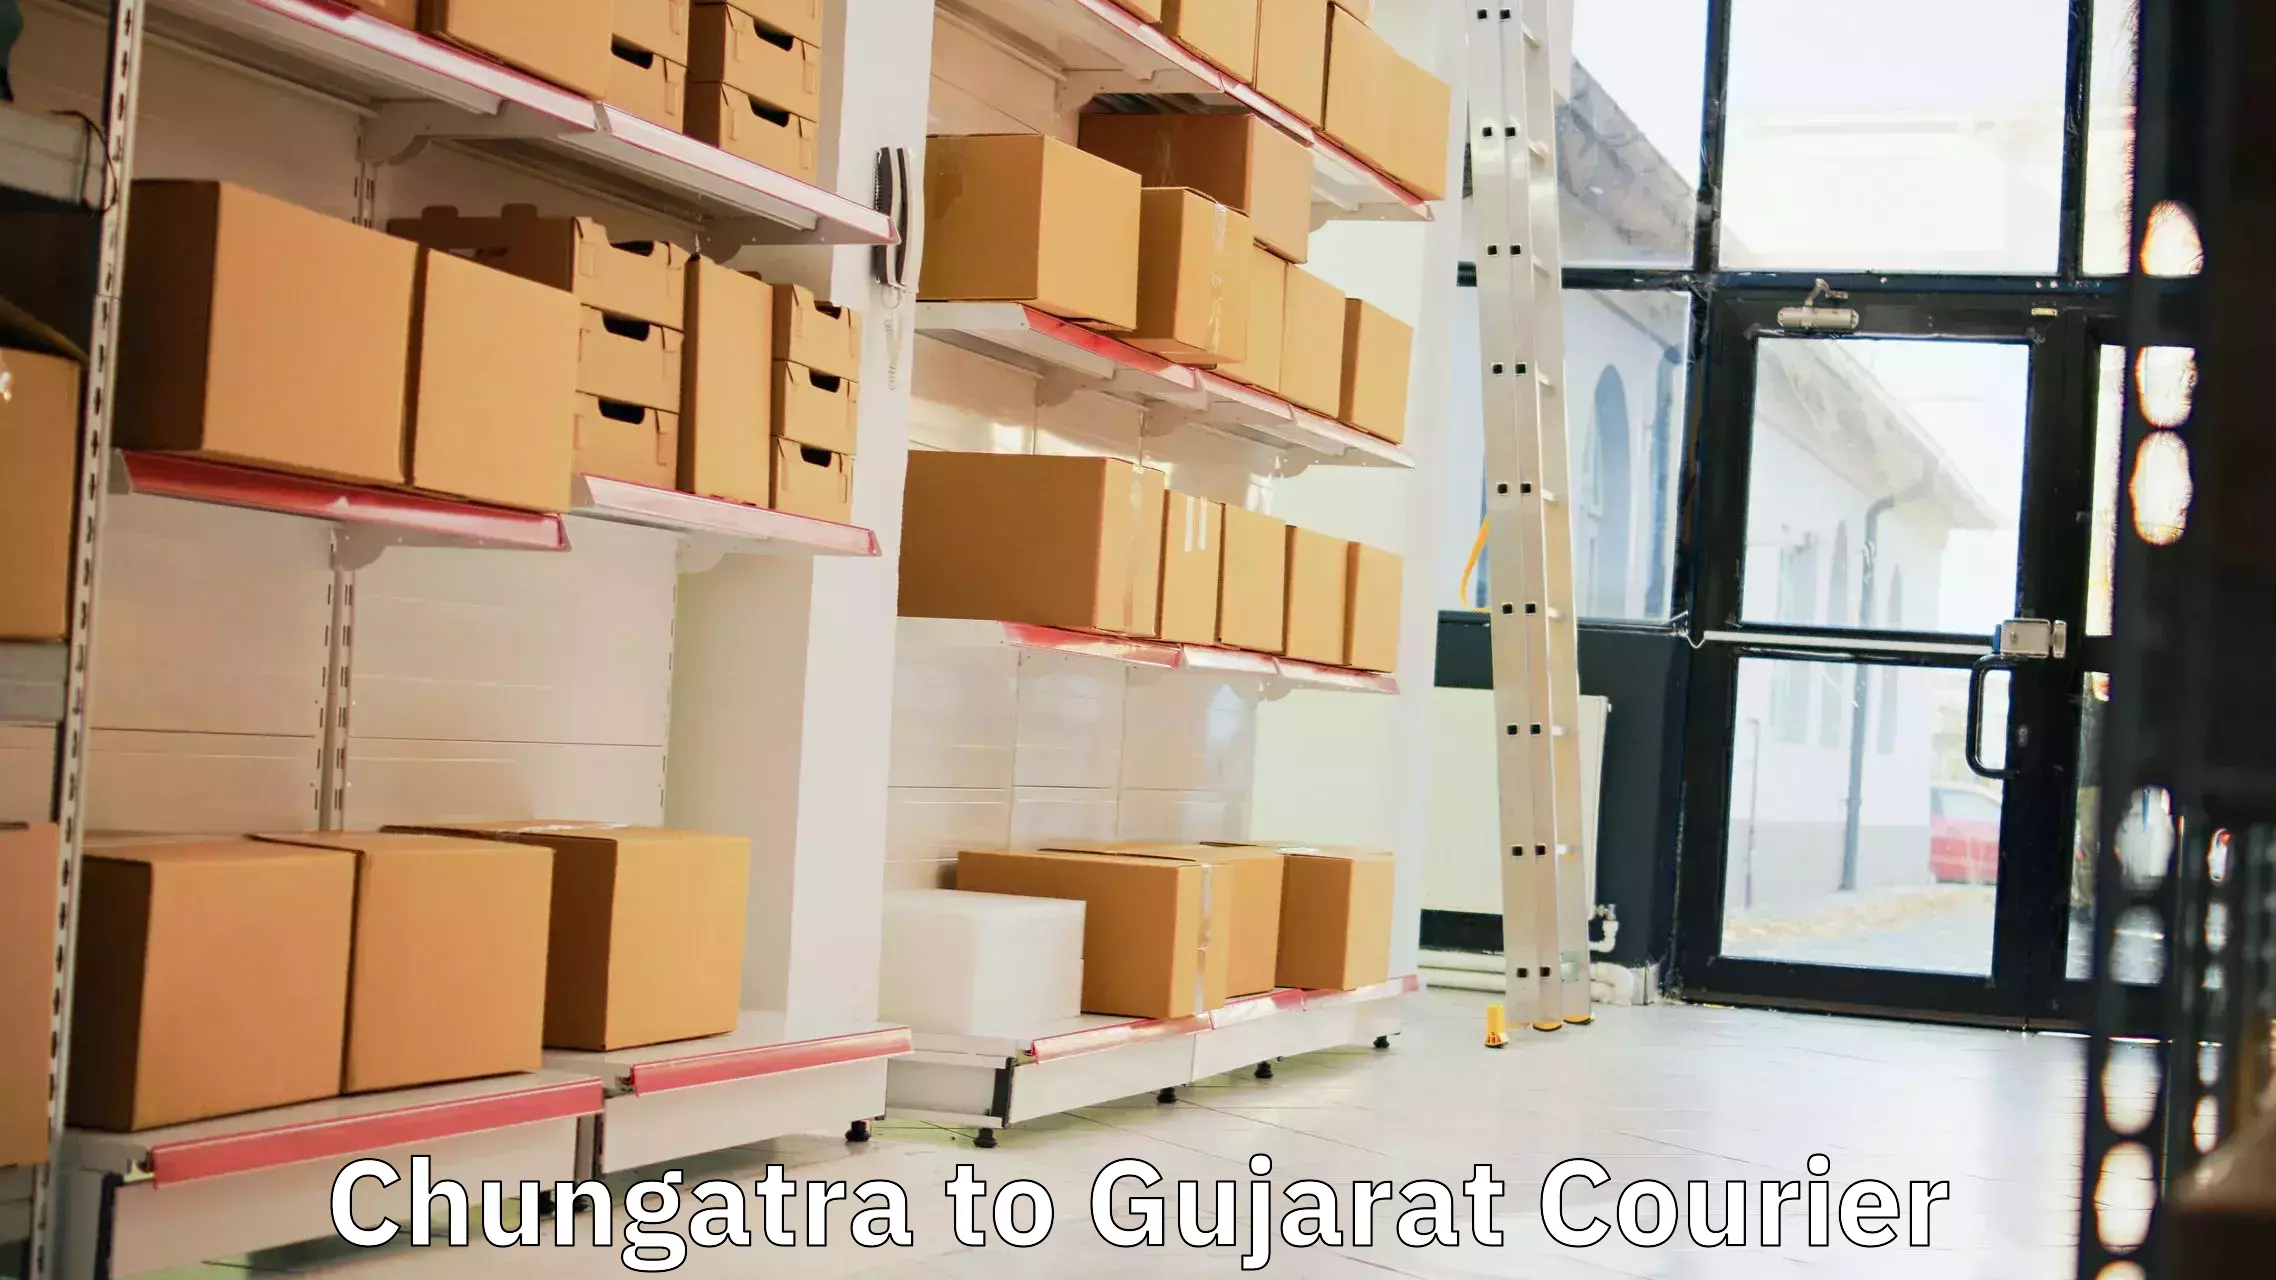 Express mail service Chungatra to Patan Gujarat